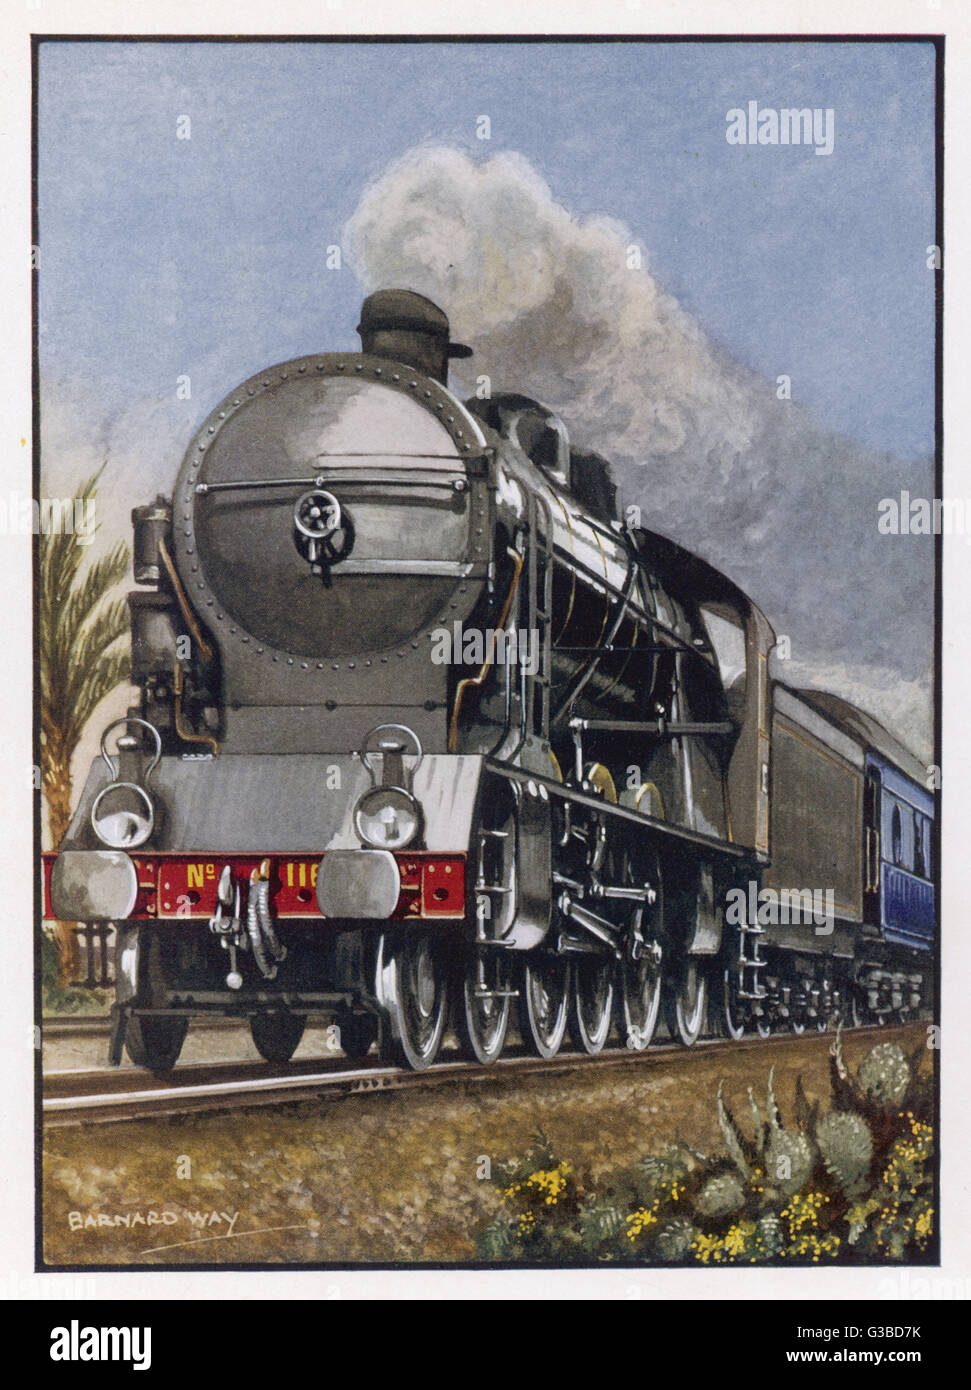 'Le Train Bleu' de la route Paris- Lyon-Marseille, le célèbre express transportant des Parisiens branchés de la Côte d'Azur. Date : vers 1927 Banque D'Images